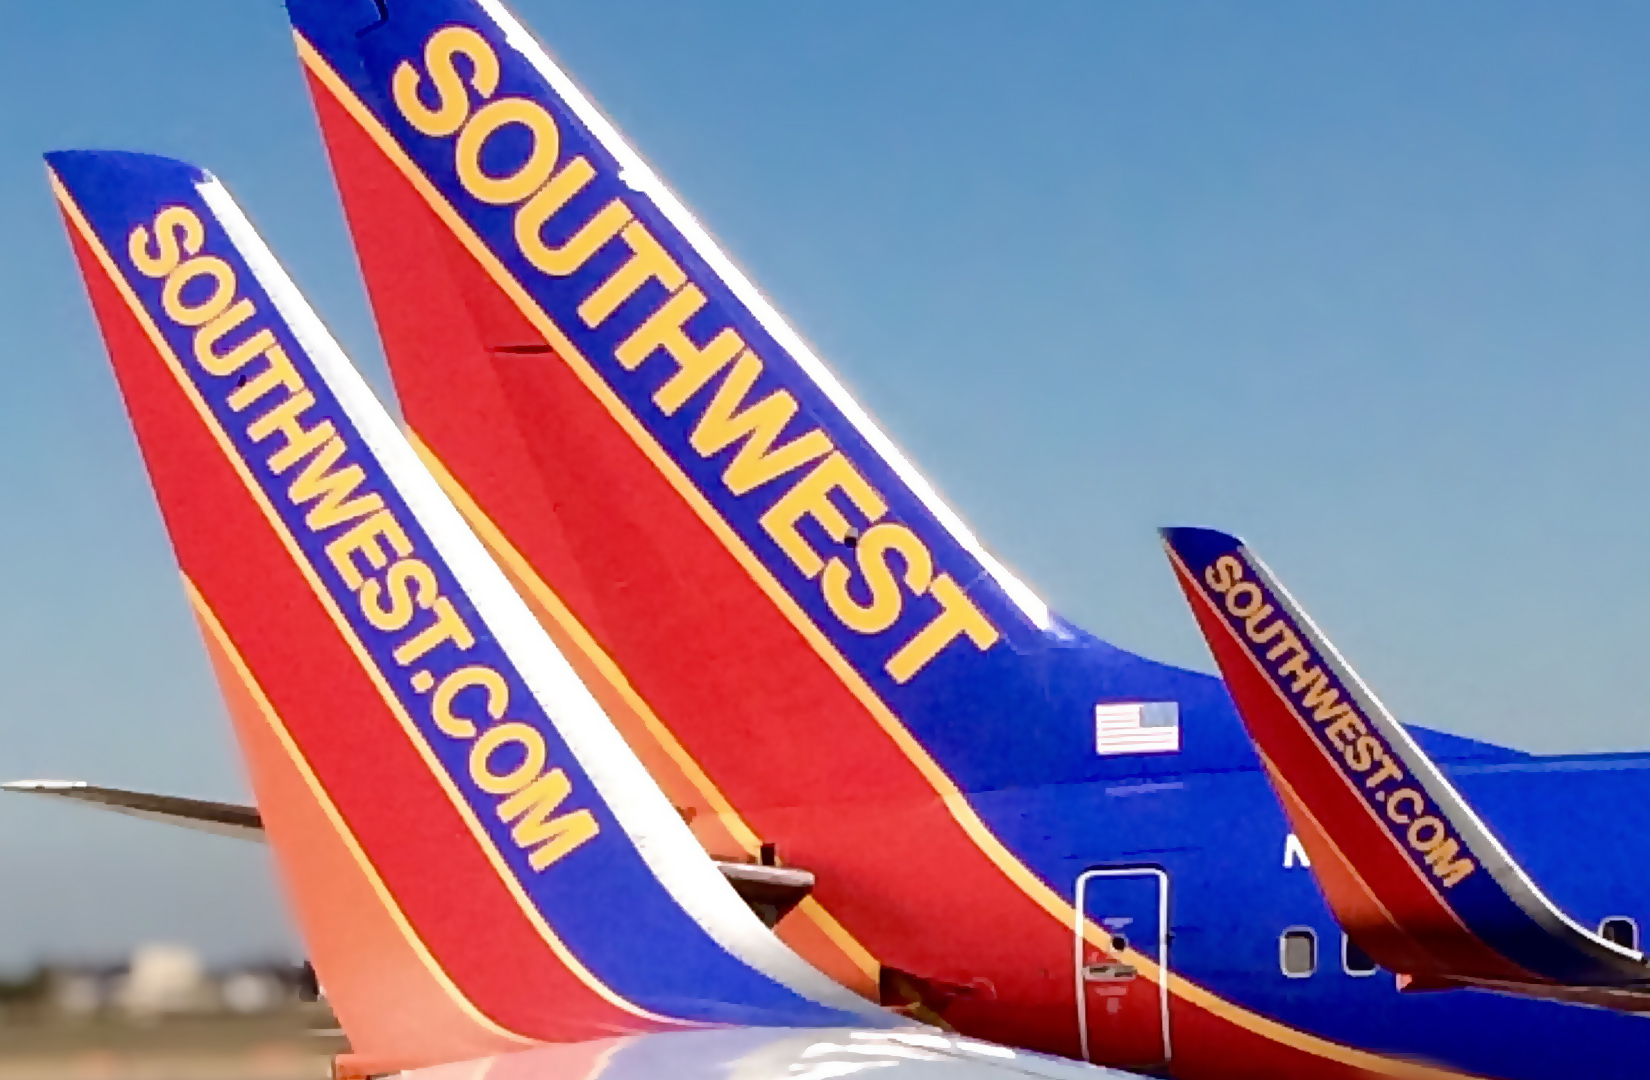 southwest flights grounded